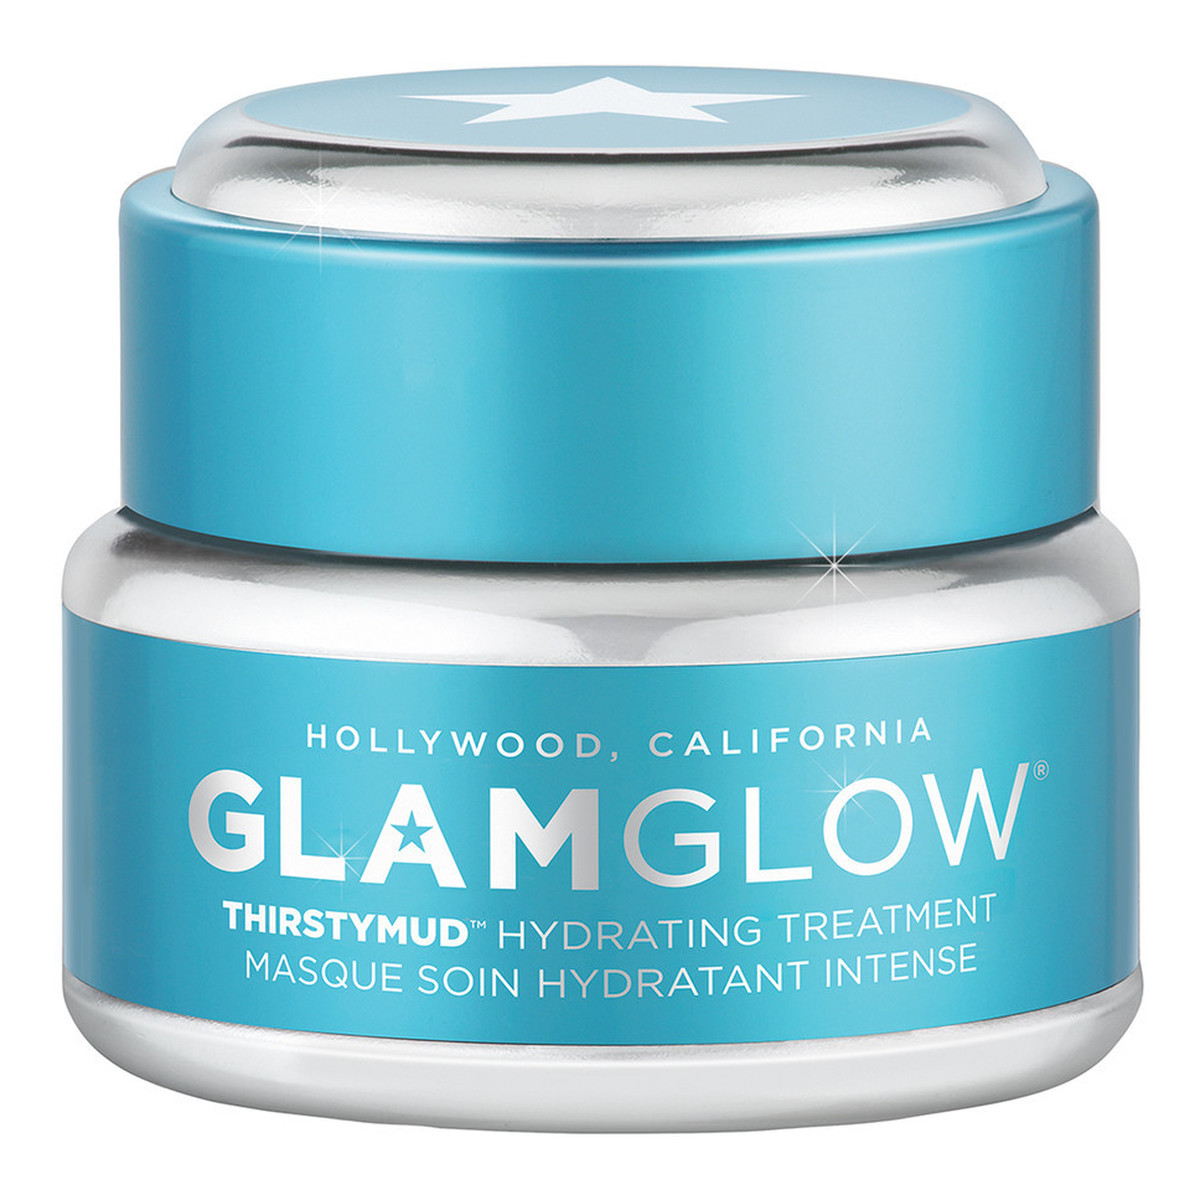 GlamGlow Thirstymud Hydrating Treatment Nawilżająca maseczka do twarzy 15g